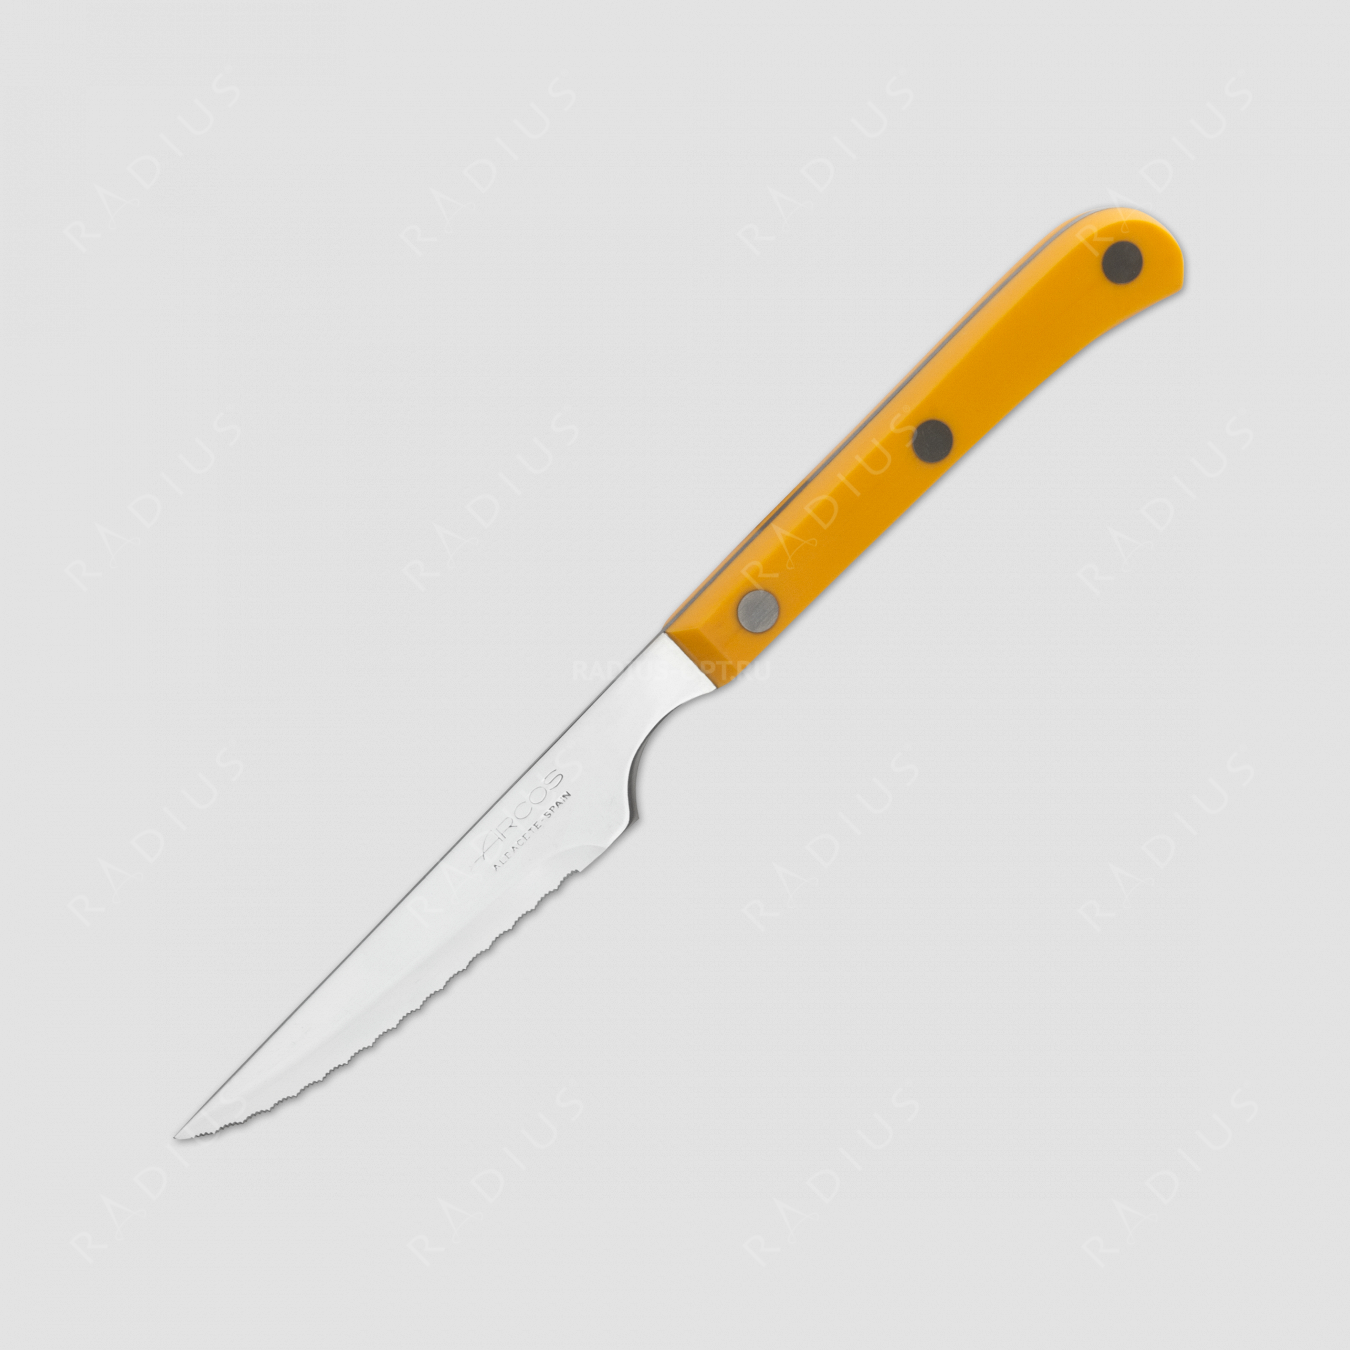 Нож кухонный для стейка 11,5 см, рукоять желтая, серия Mesa, ARCOS, Испания